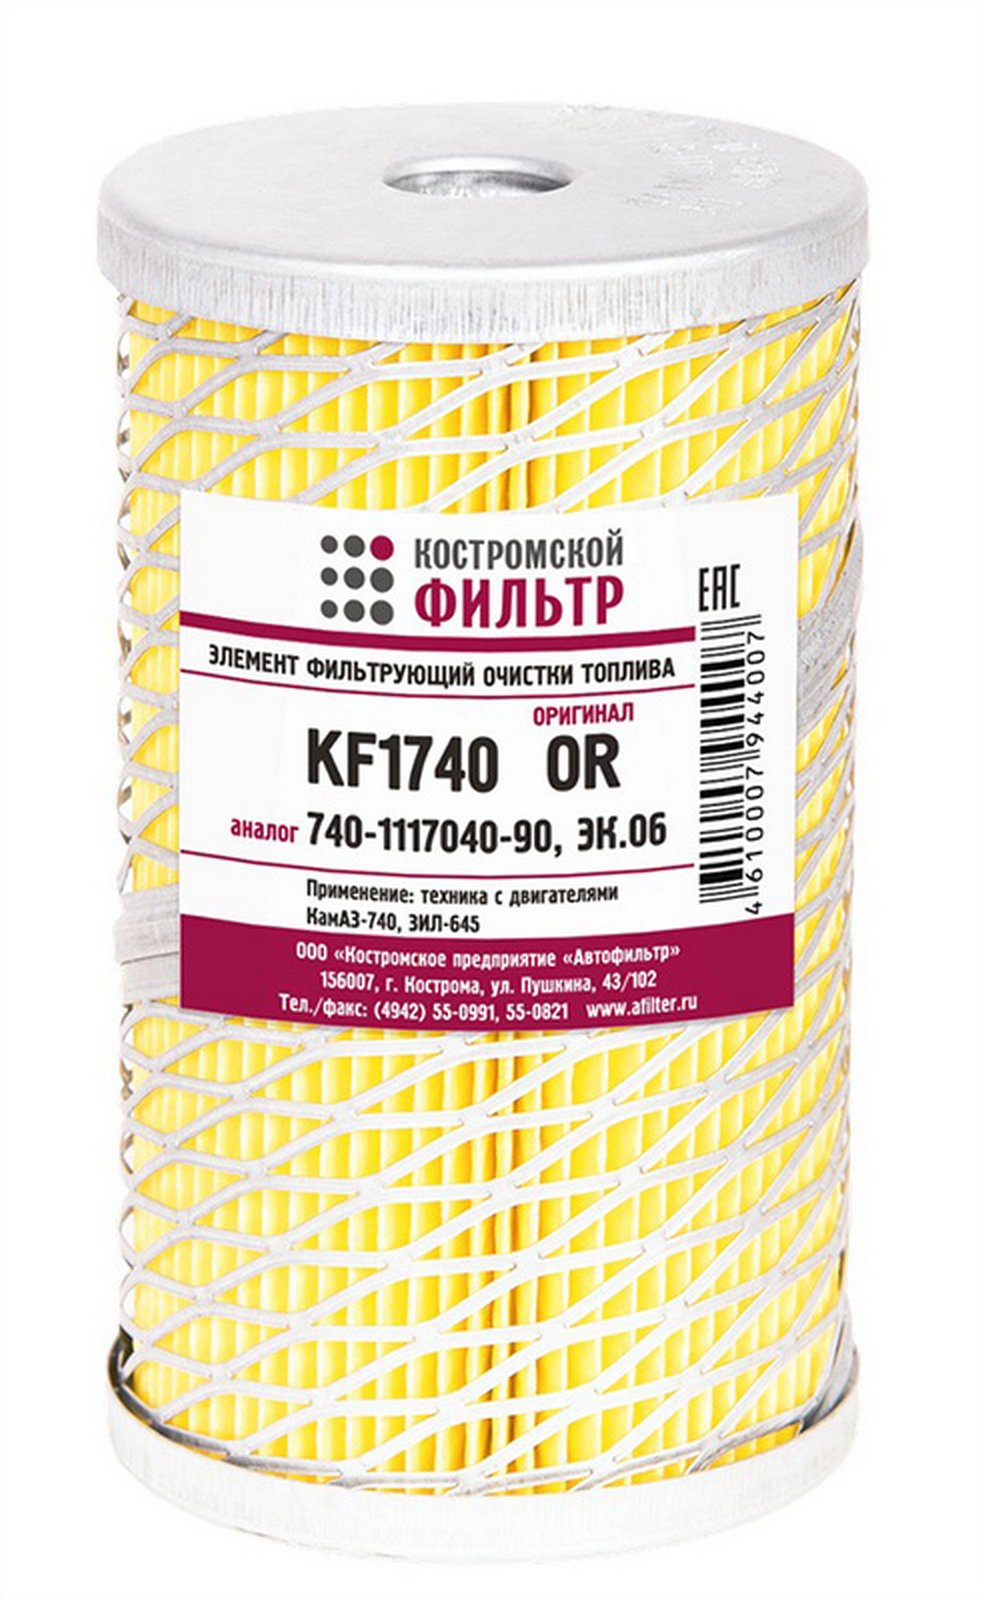 KF1740 OR Элемент фильтрующий очистки топлива KF1740 OR Оригинал  Костромской фильтр